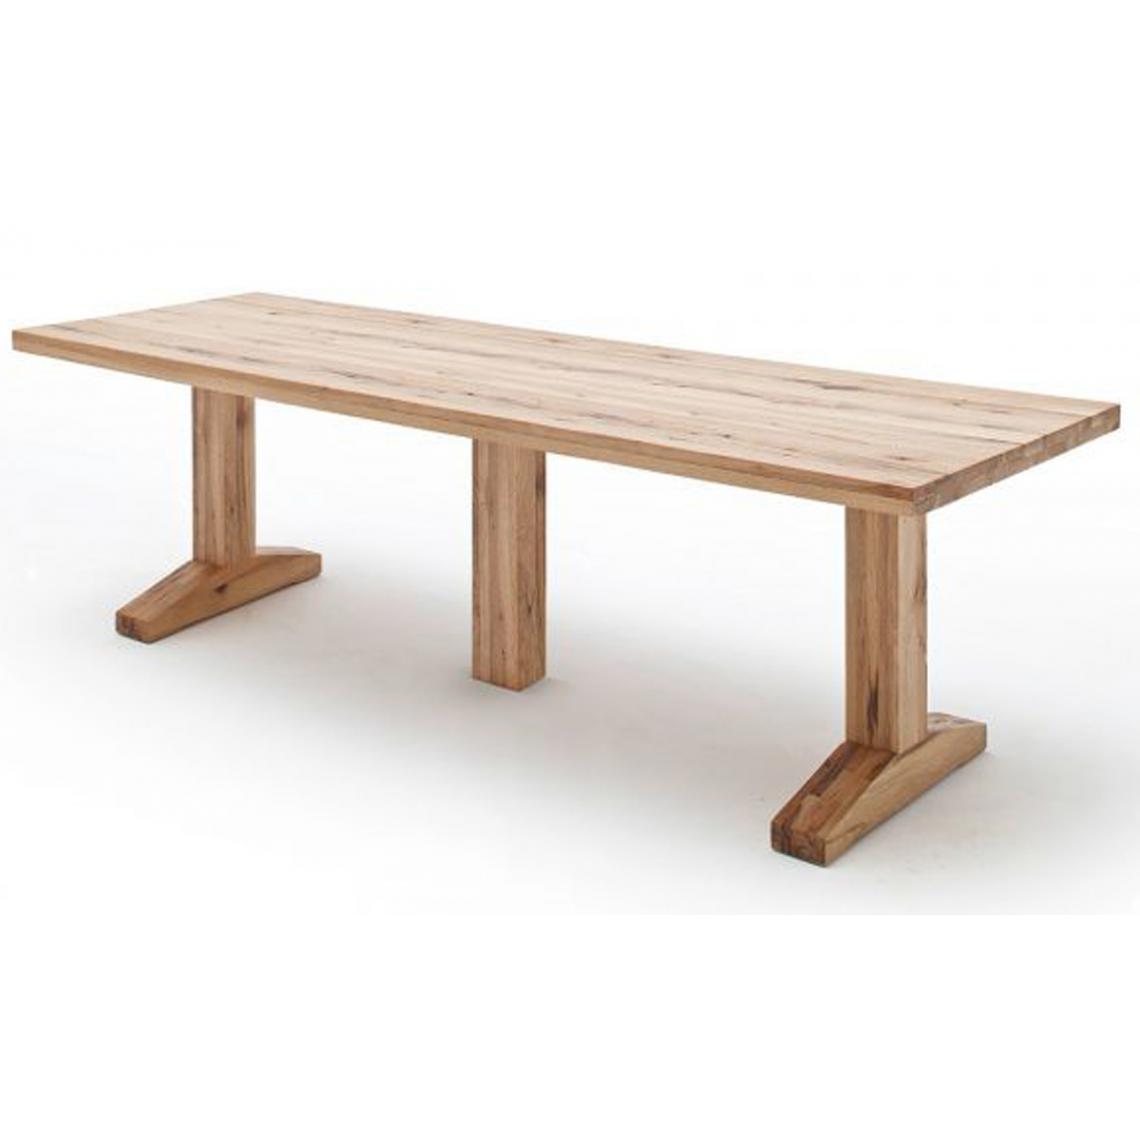 Pegane - Table à manger en chêne sauvage laqué mat massif - L.300 x H.76 x P.120 cm -PEGANE- - Tables à manger